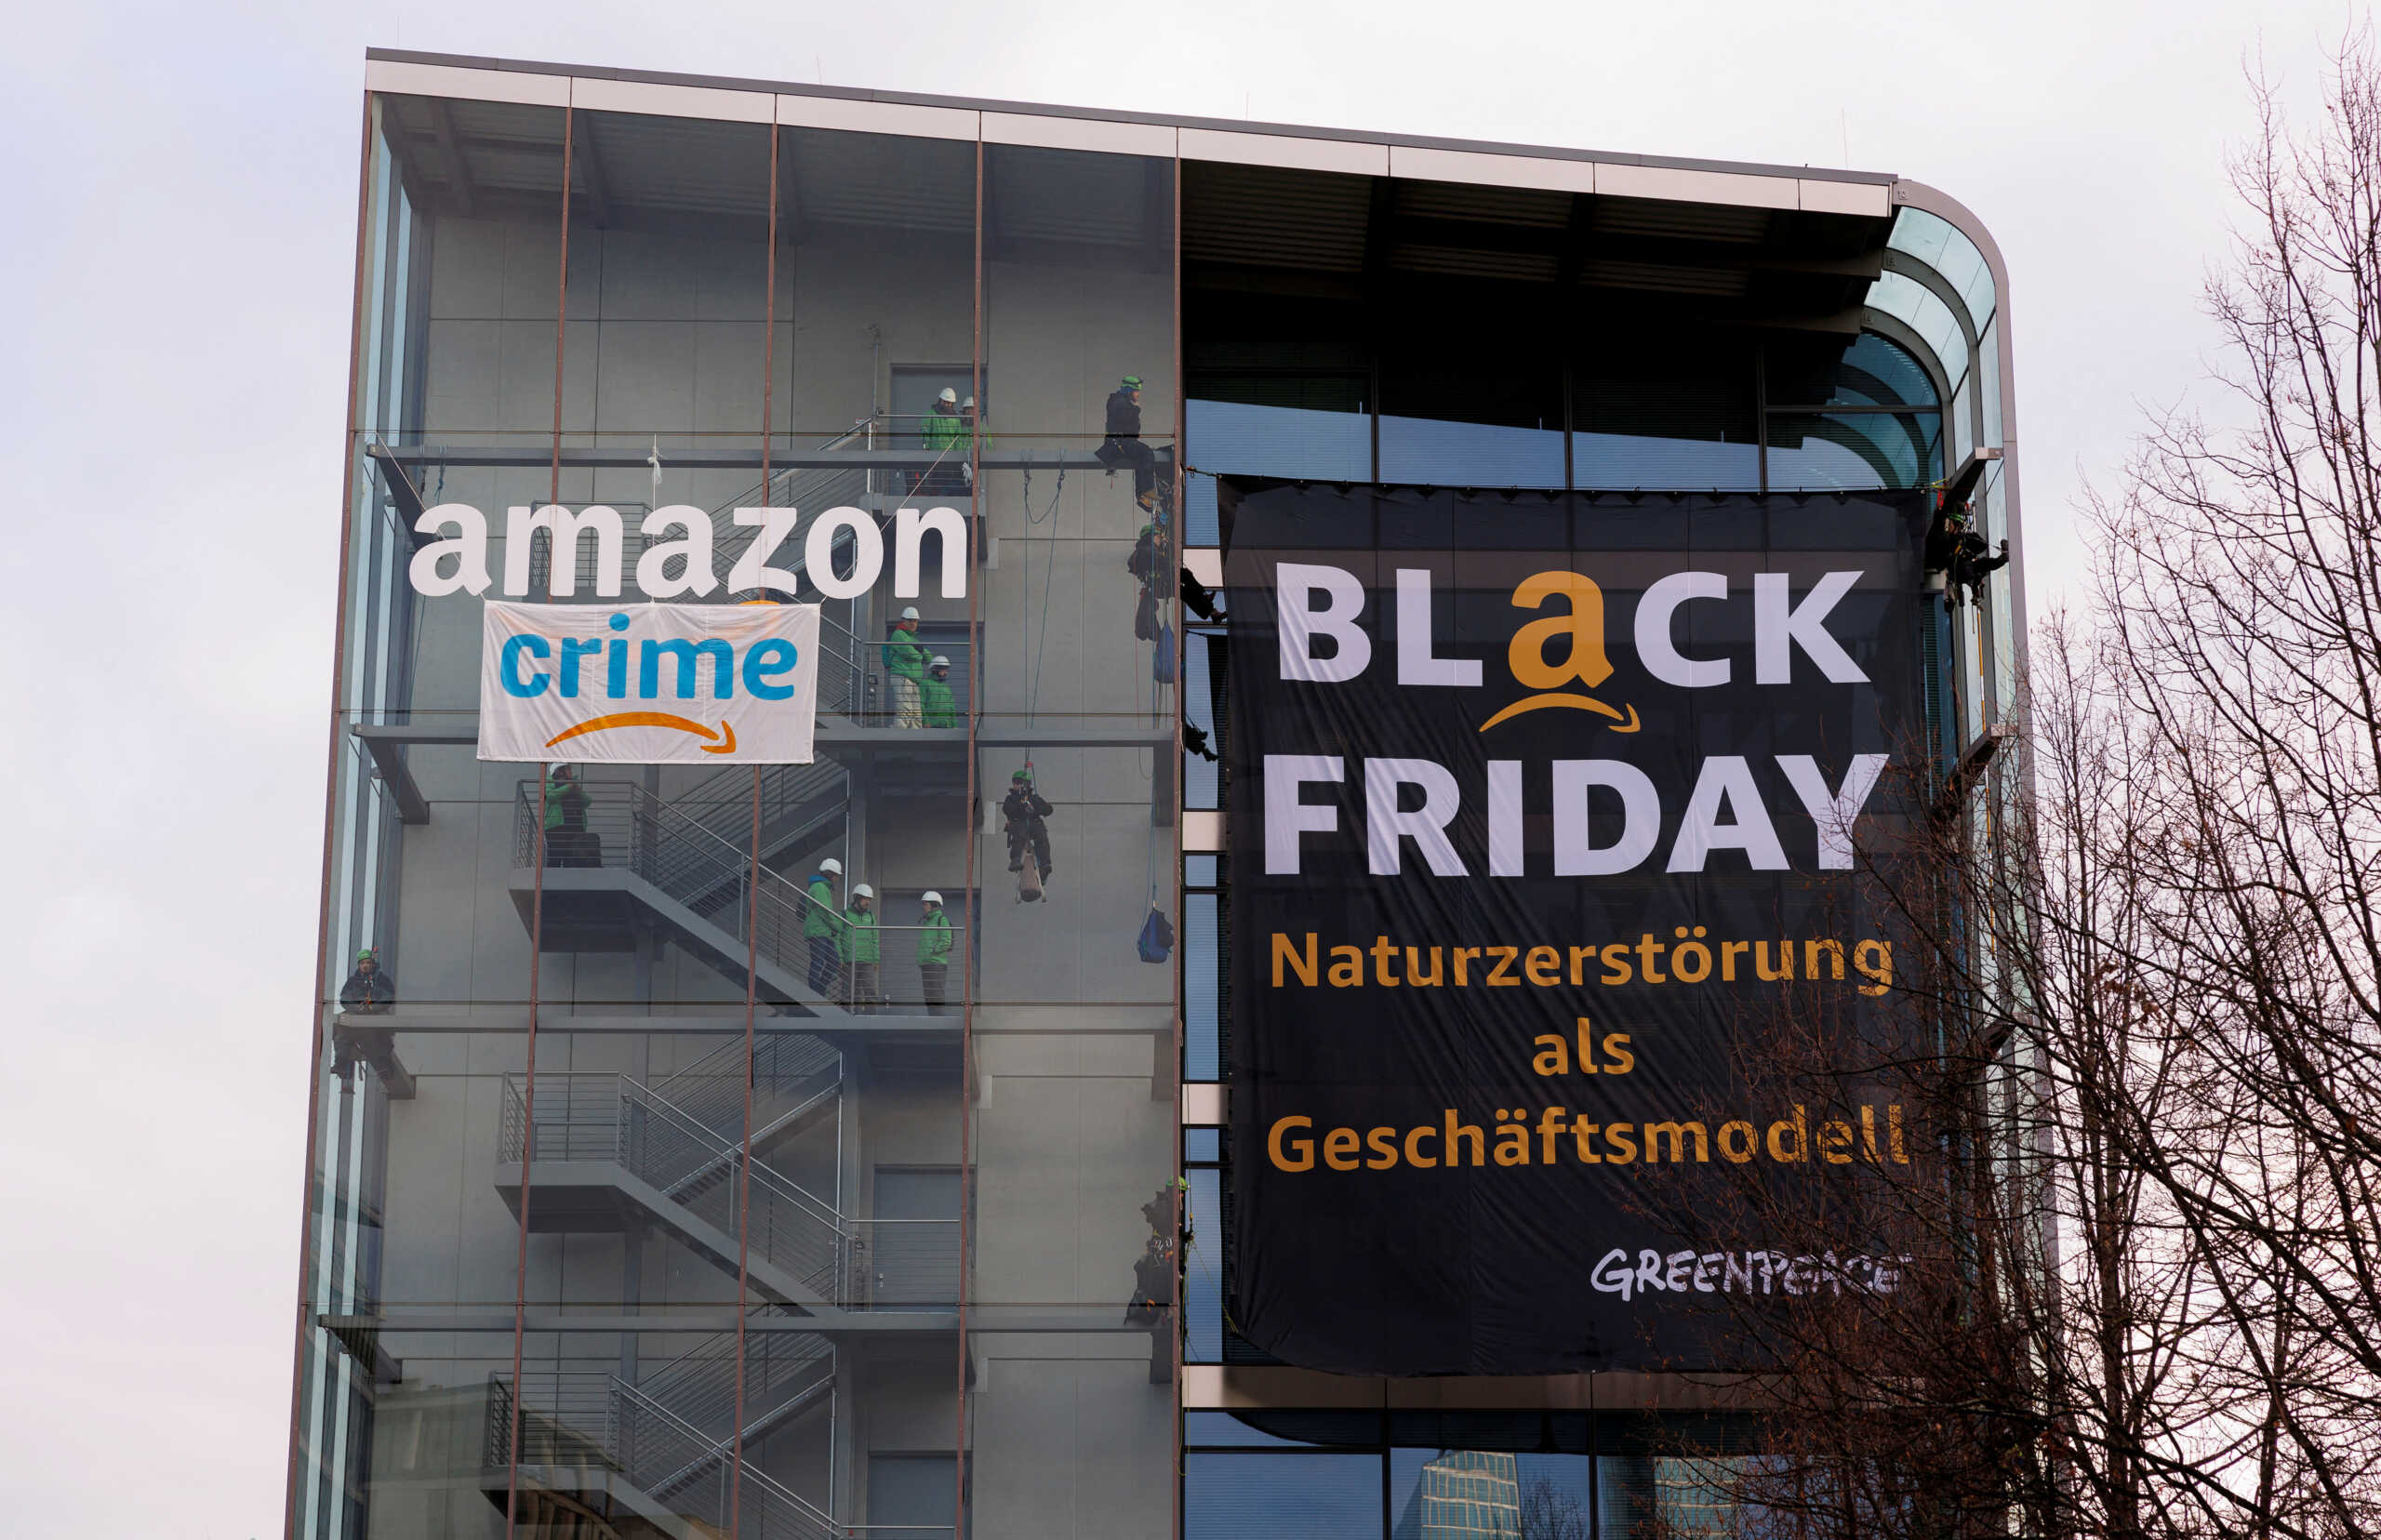 Εργαζόμενοι στην Amazon καλούνται να απεργήσουν σε όλο τον κόσμο τη σημερινή Black Friday